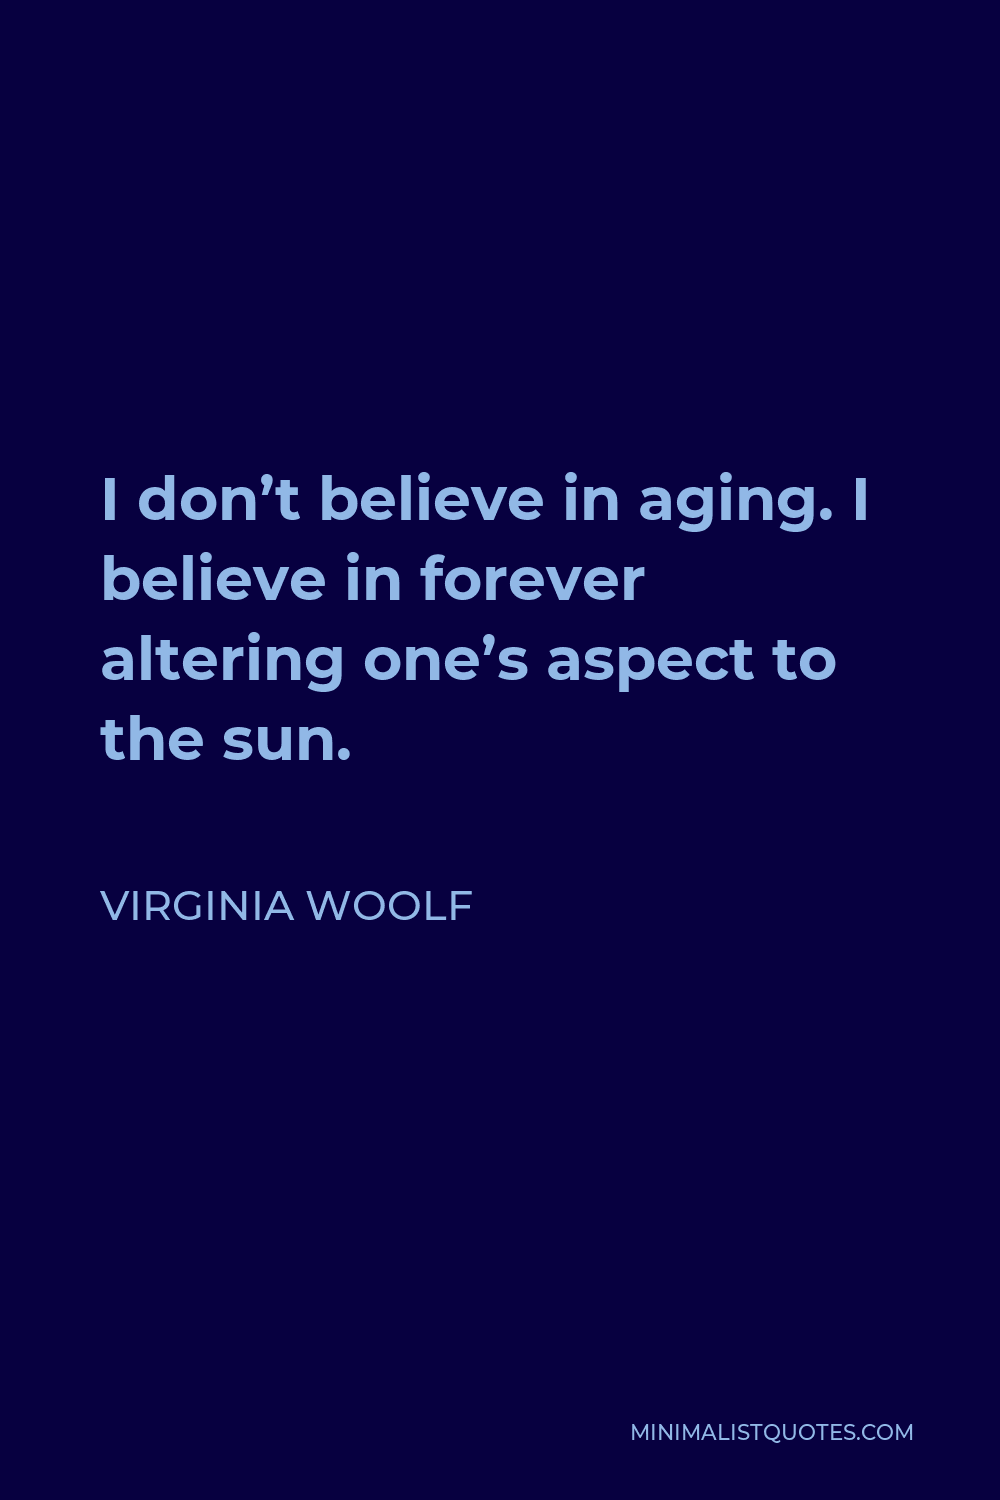 Virginia Woolf on aging